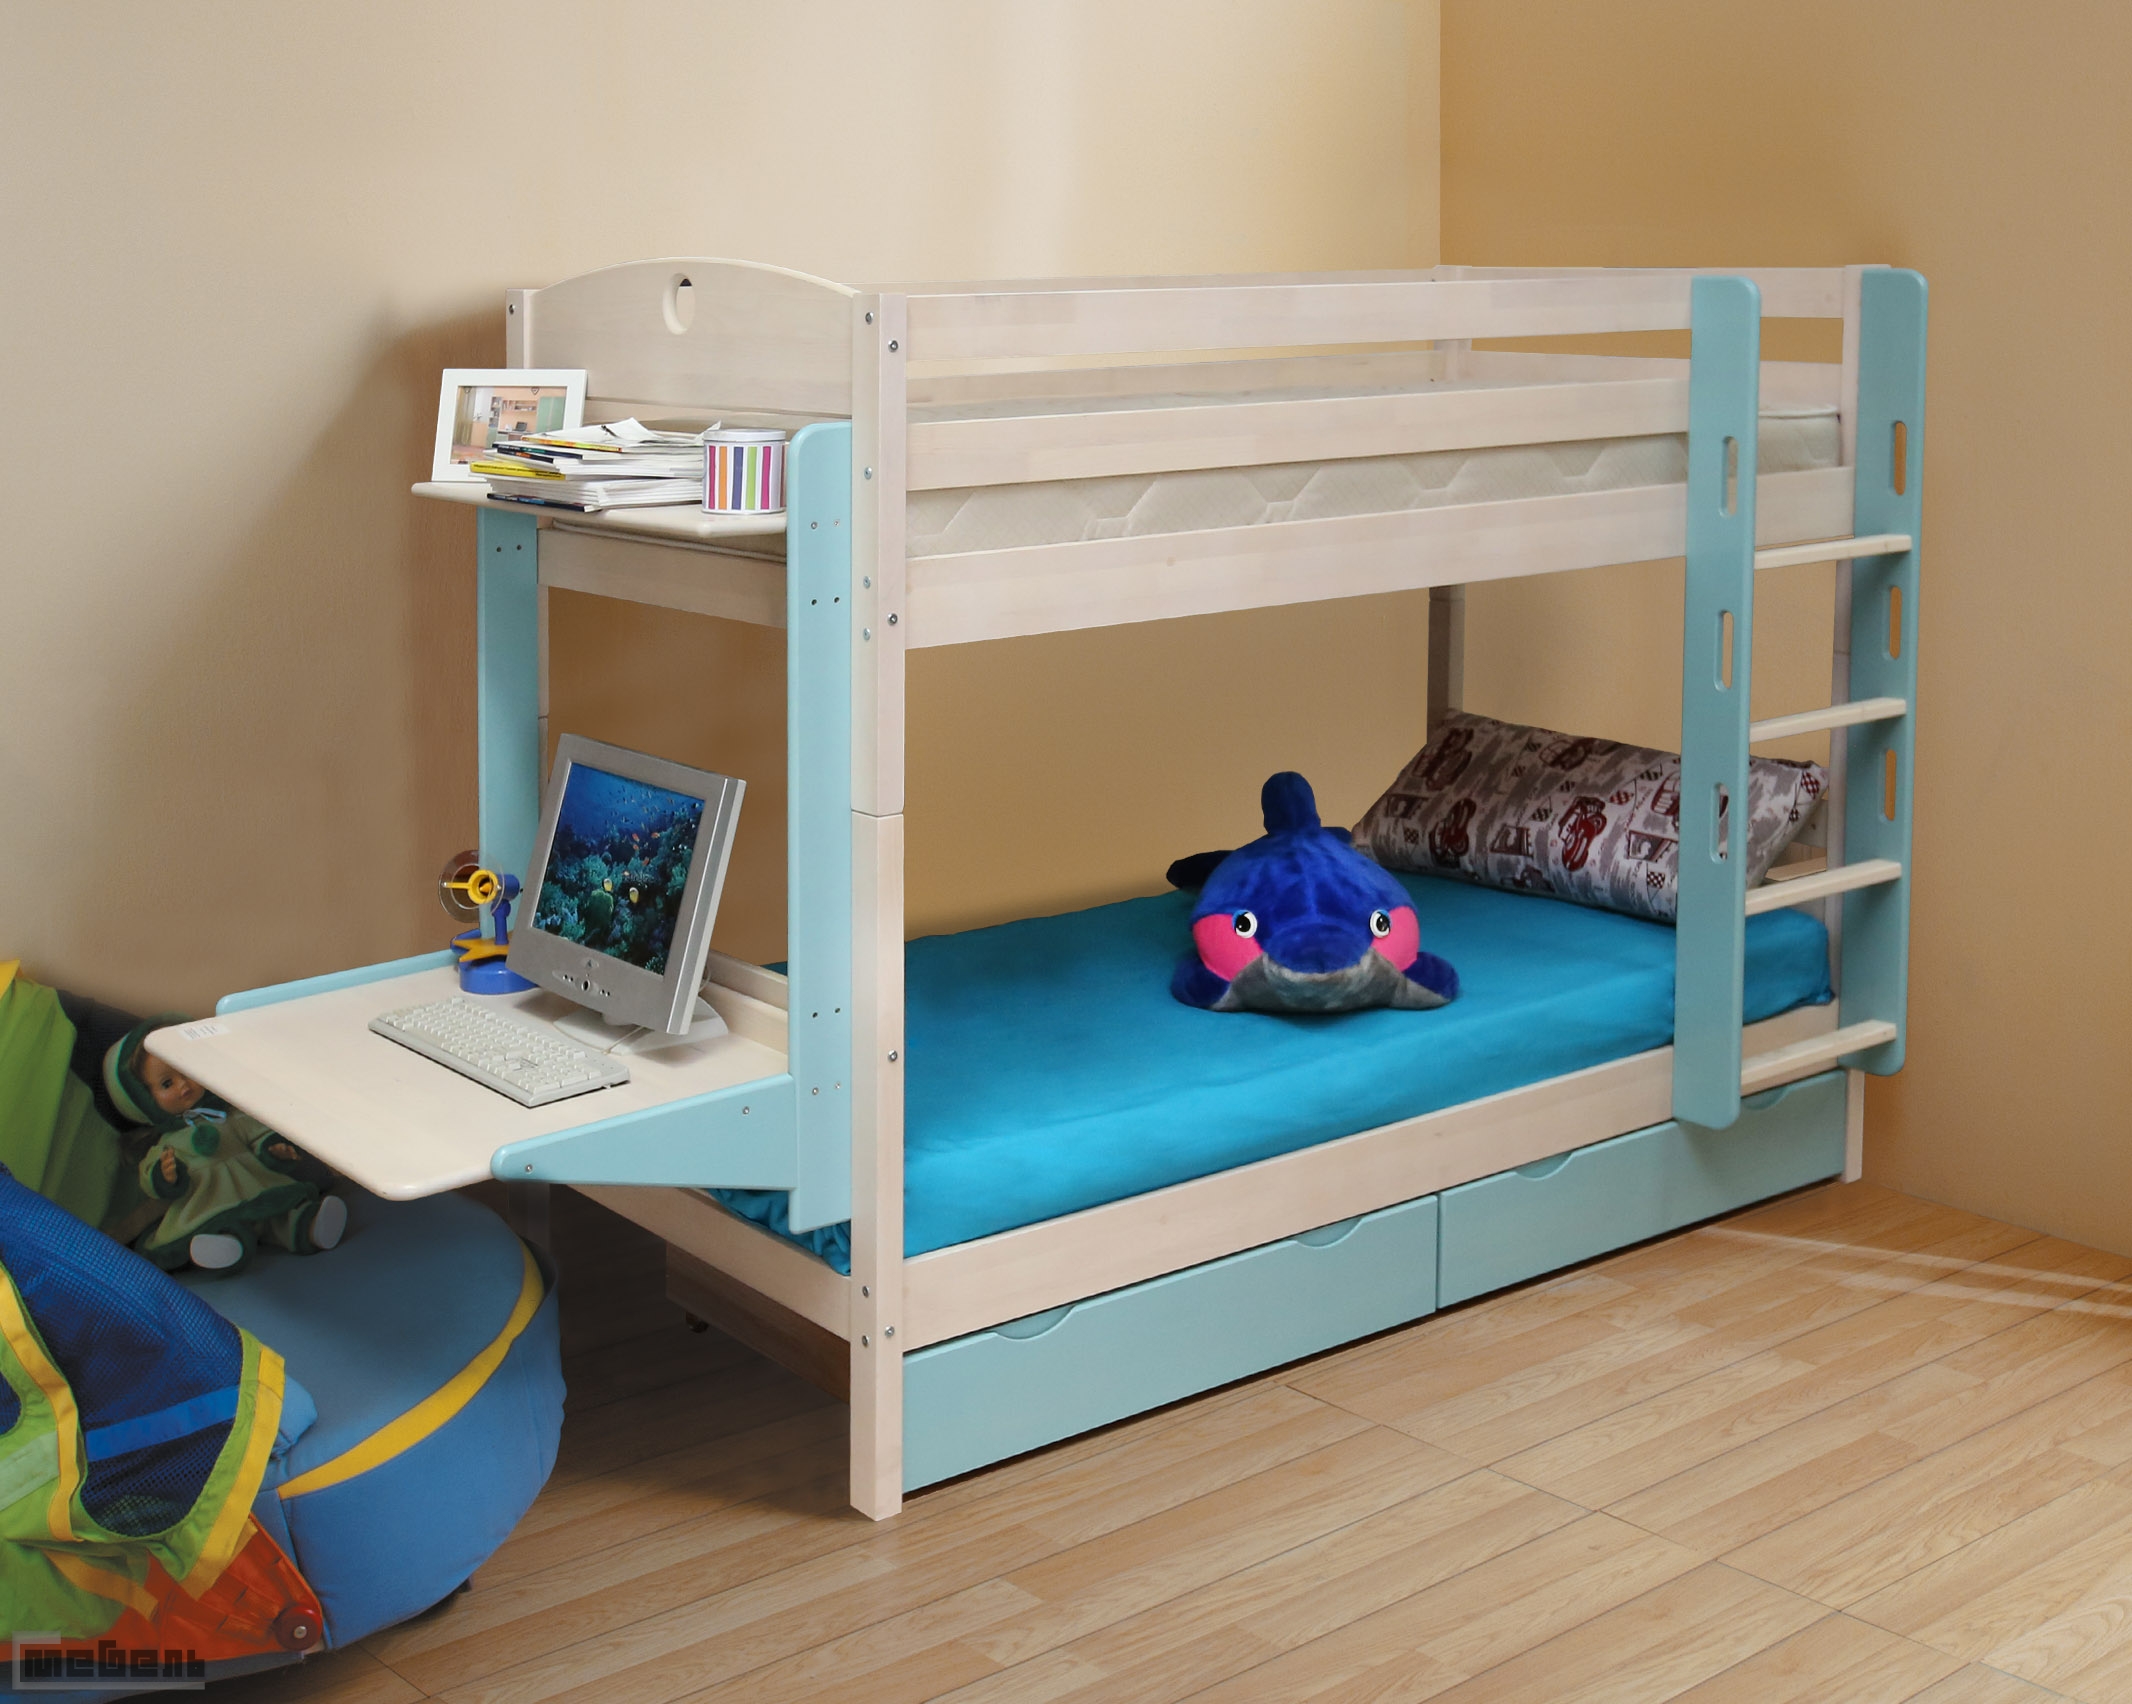 Кровать детская двухъярусная массив с ящиками НОВАЯ (трансформер)